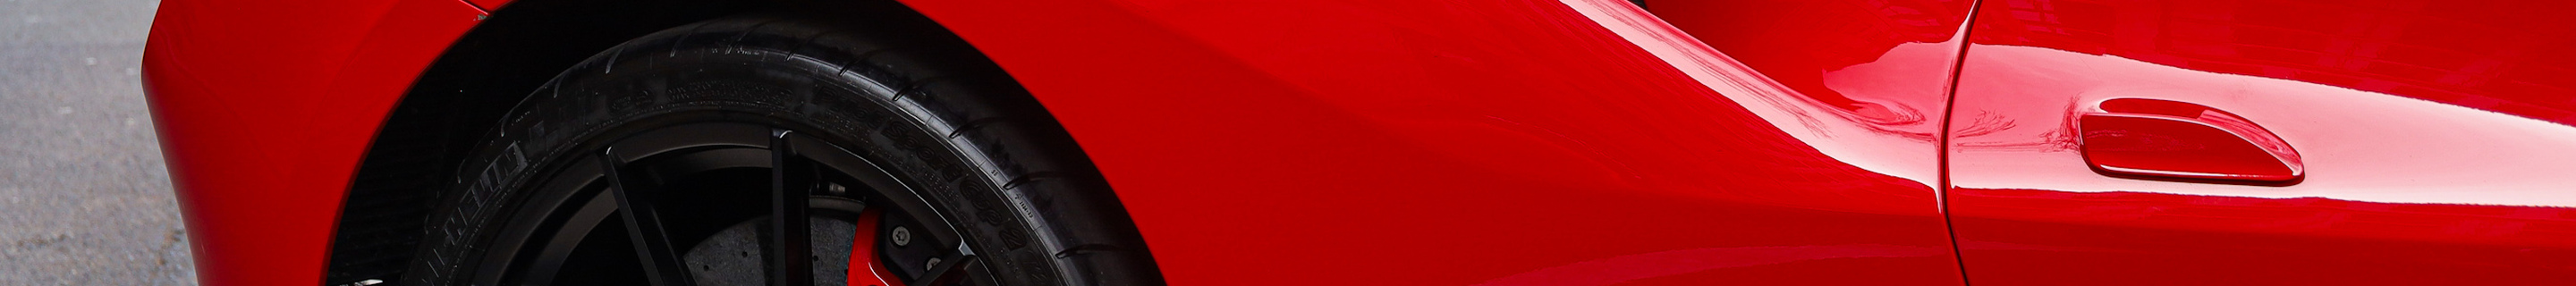 Ferrari F8 Tributo Capristo